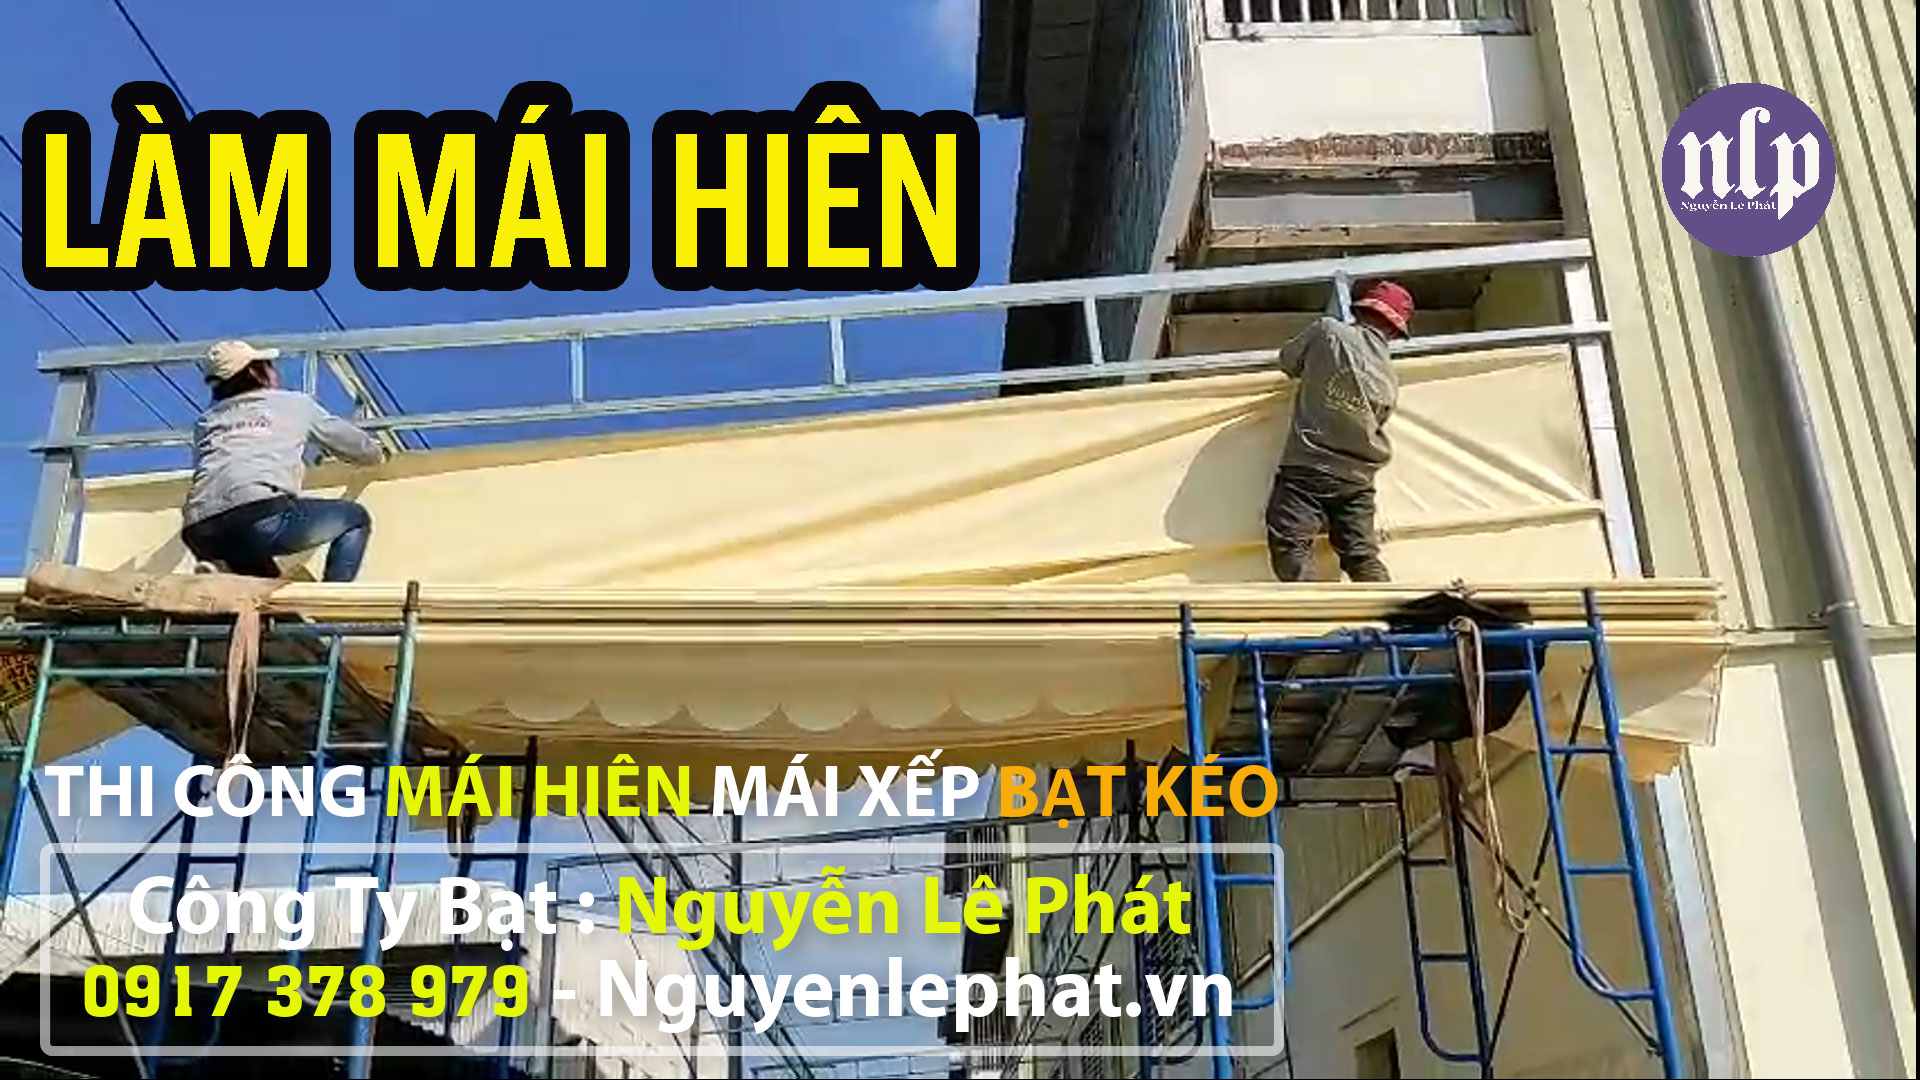 Bán Bạt Che Nắng Mưa BMT tại Vũng Tàu Gia Lai Giá Rẻ